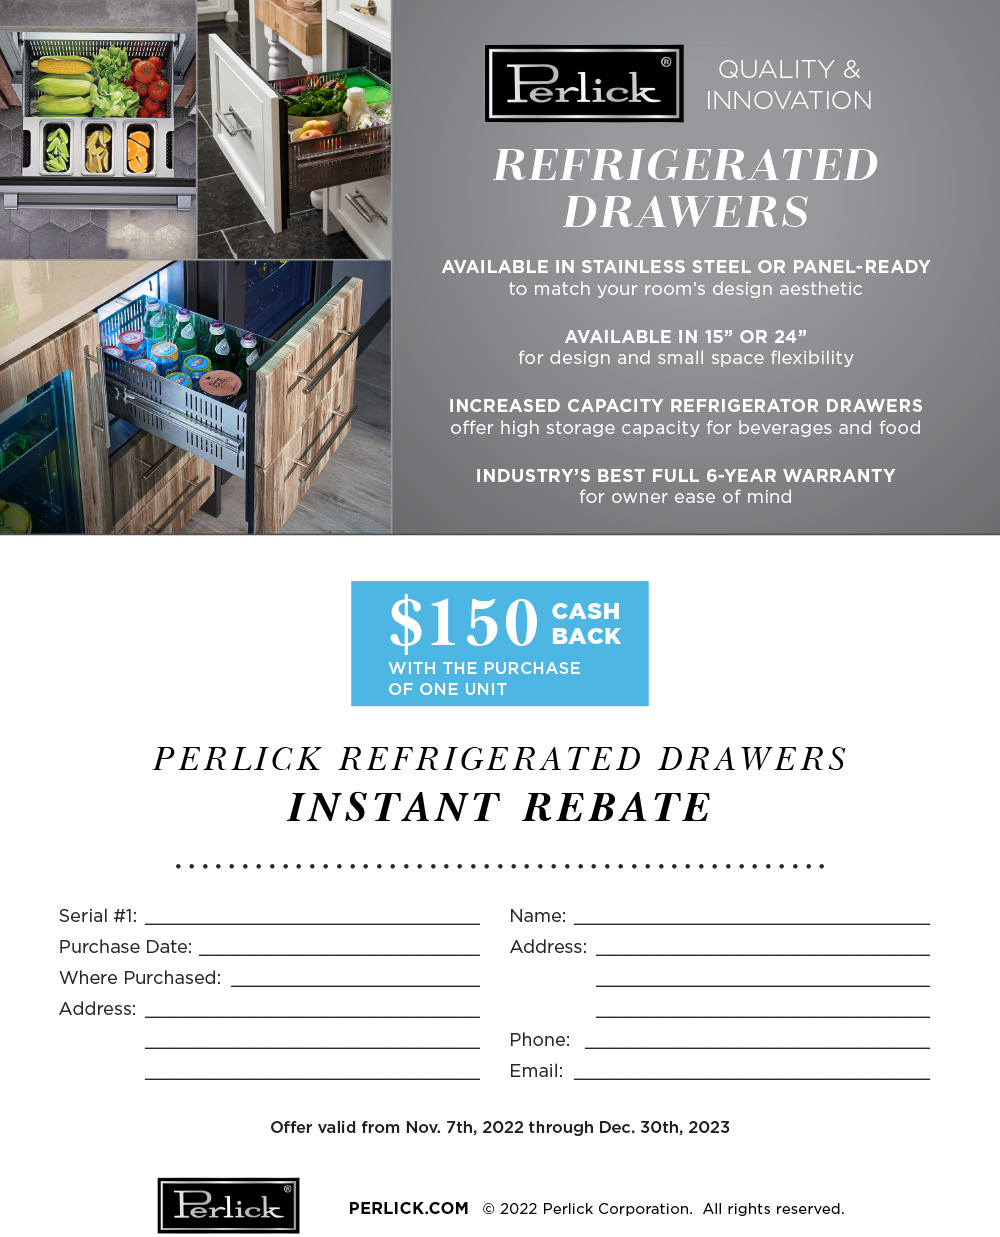 perlick-refrigerator-drawer-rebate-pinnacle-sales-group